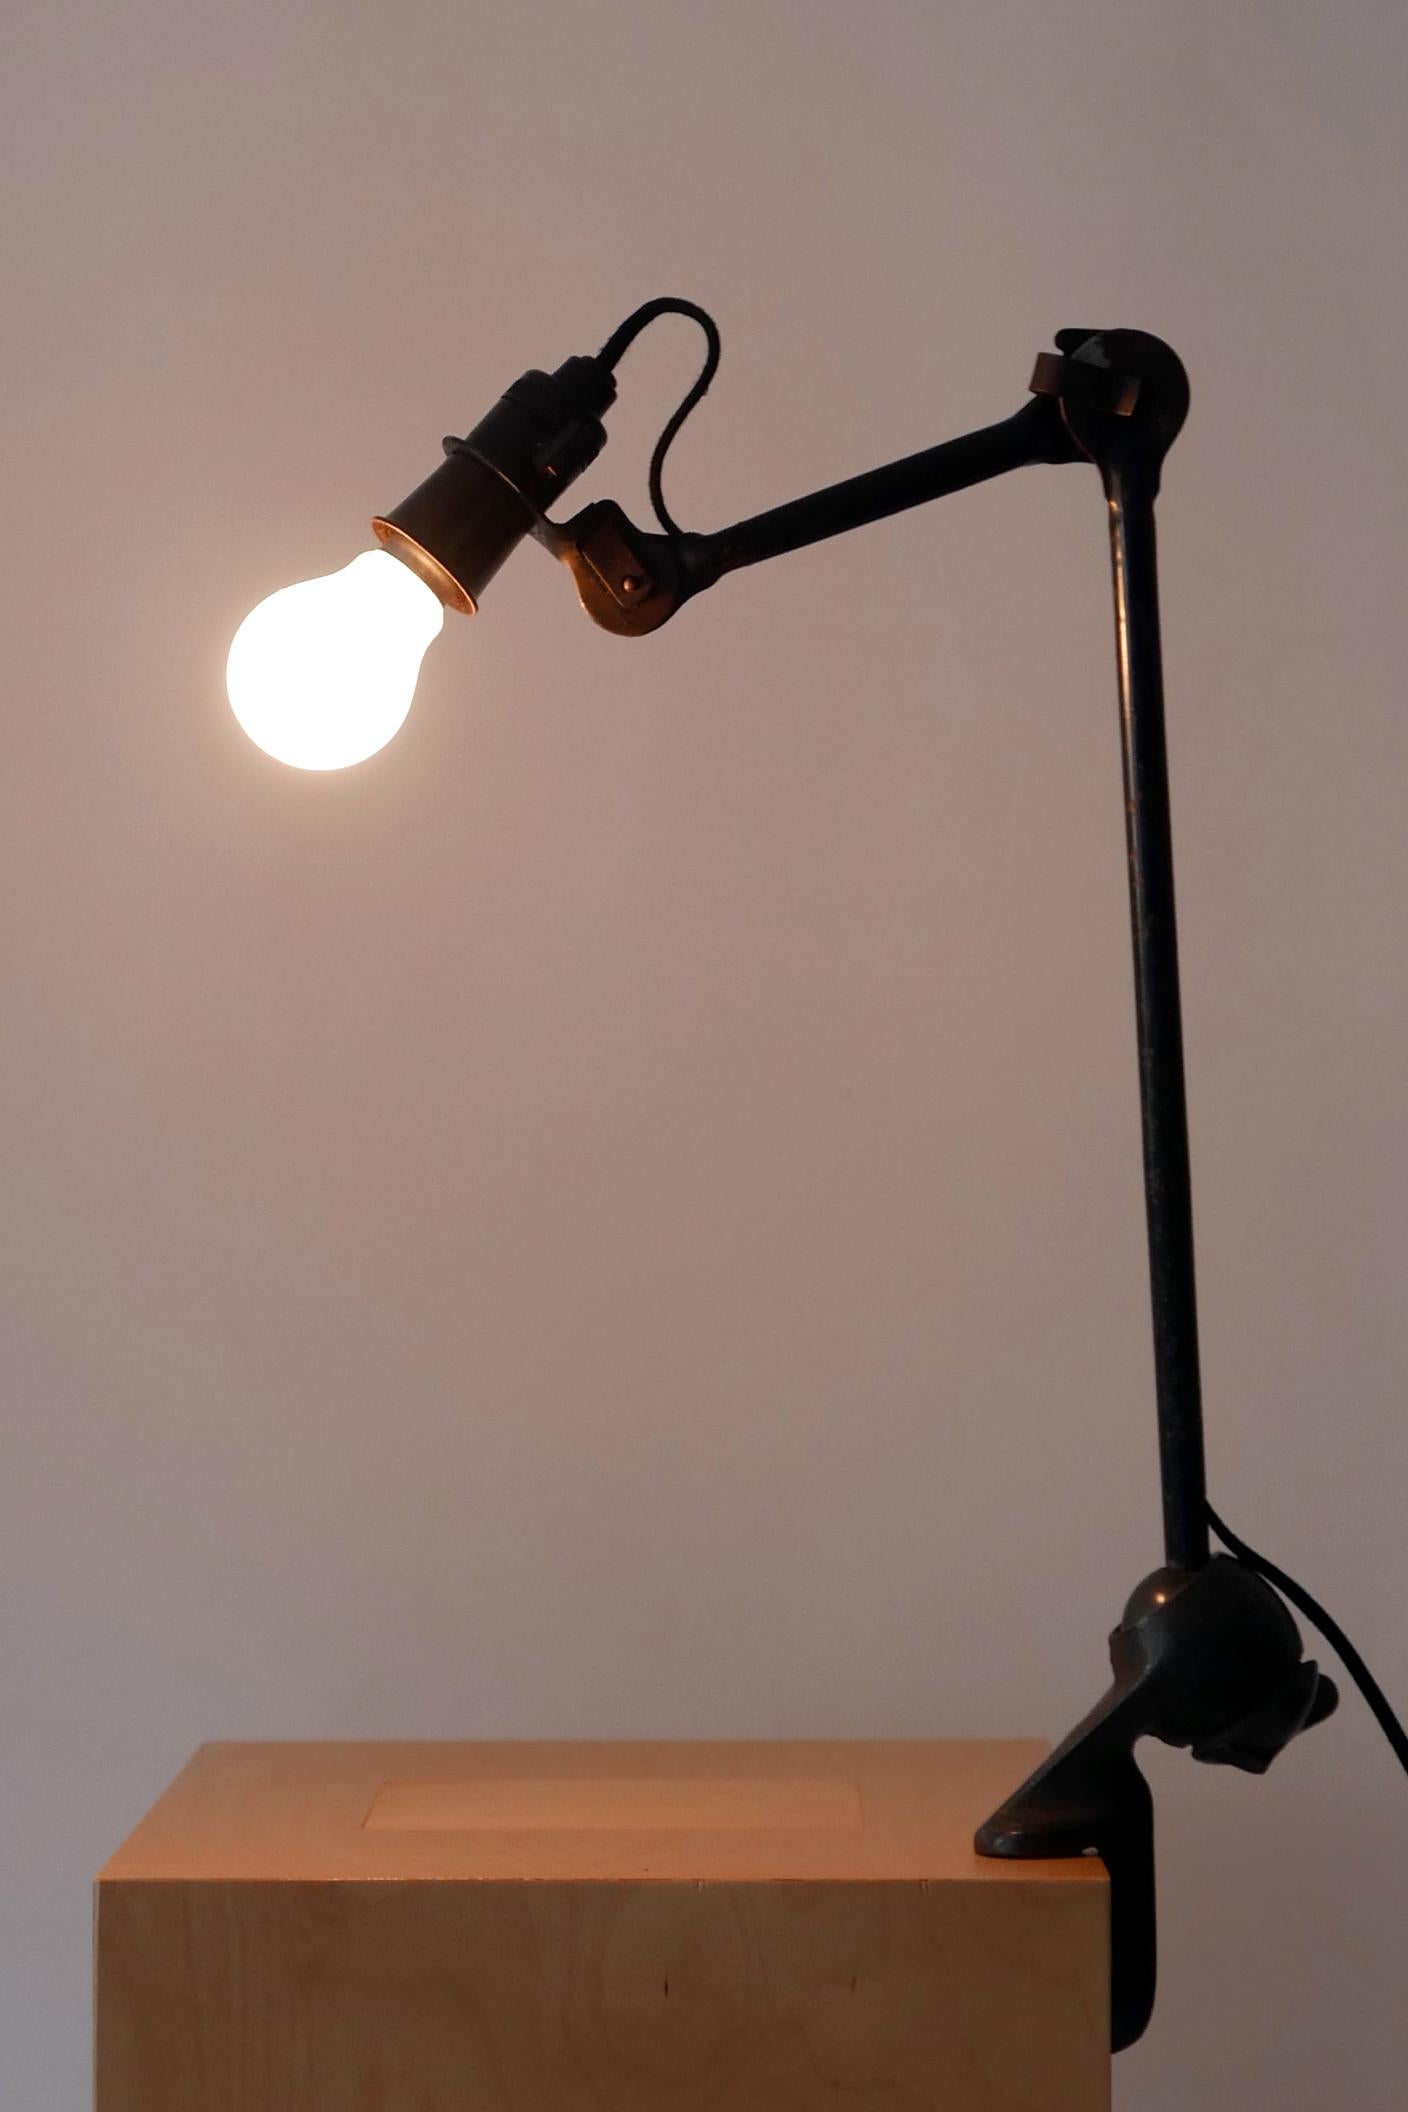 Mid-Century Modern Modernist Task Light or Clamp Table Lamp by Bernard-Albin Gras for Gras, 1920s For Sale